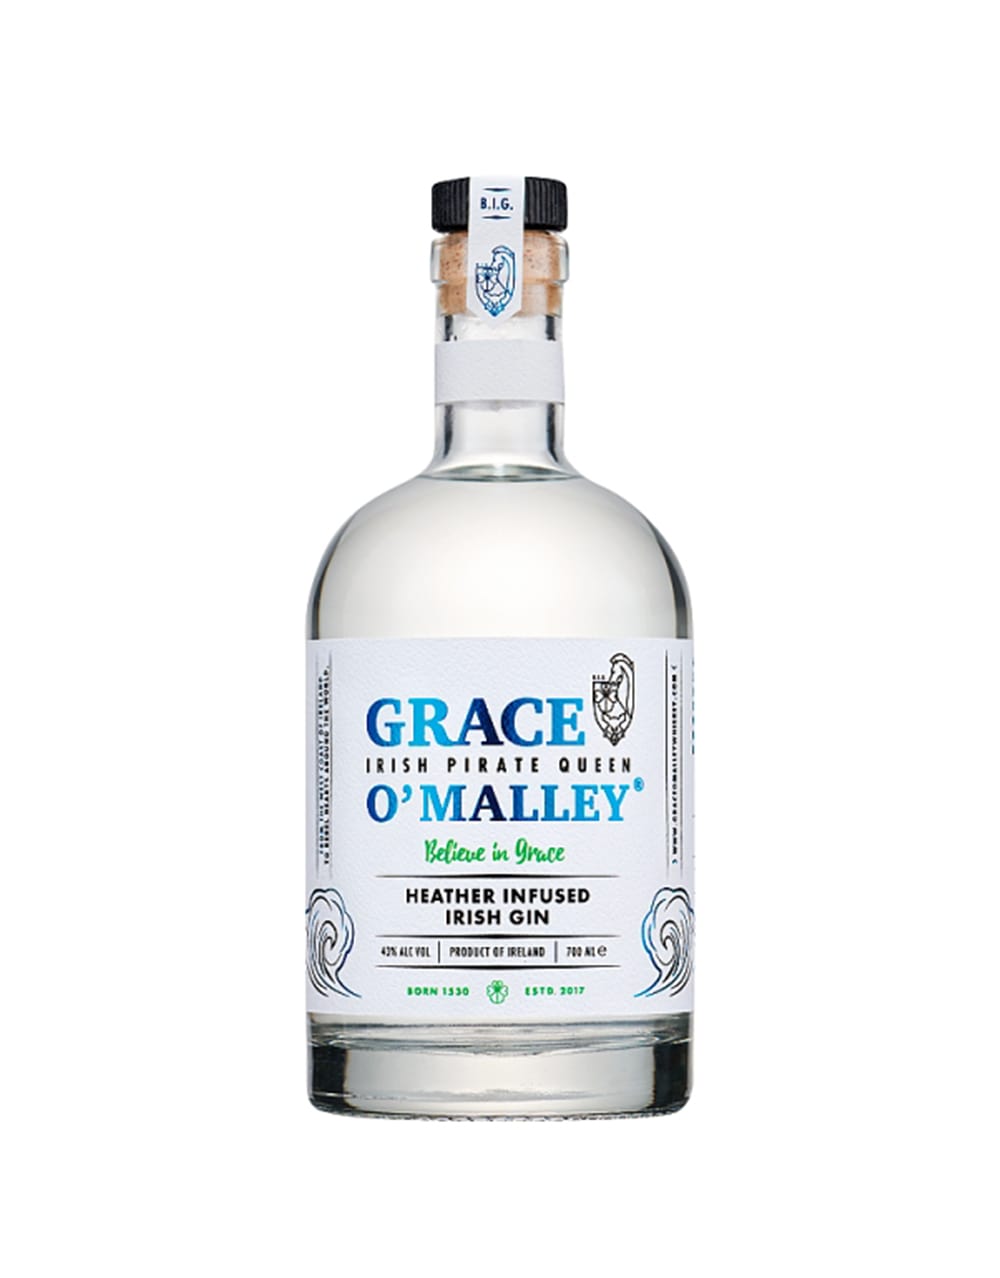 Grace O'Malley Irish Pirate Queen Heather Infused Irish Gin